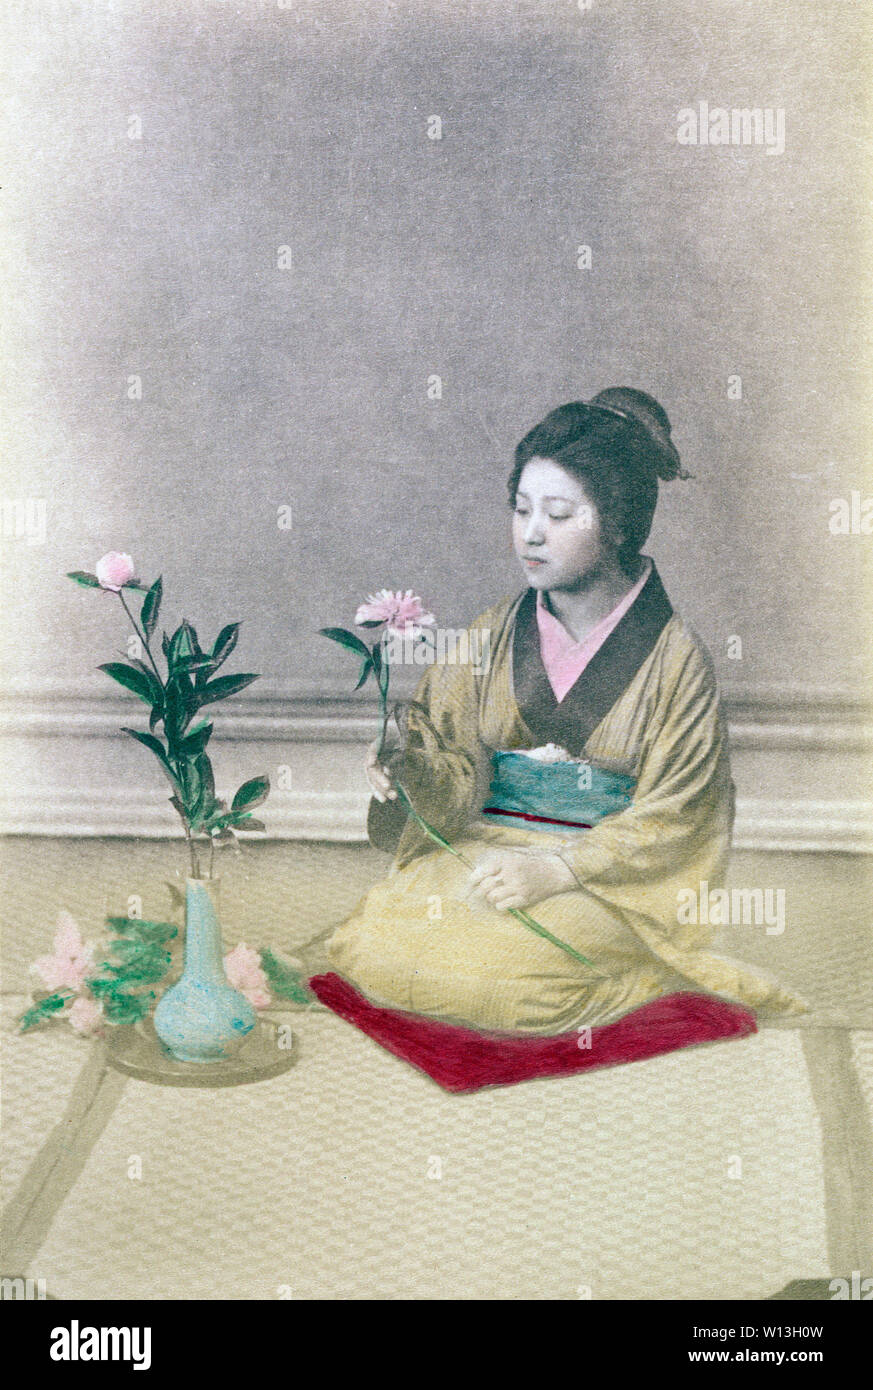 [ 1890 - Japon ] Arrangement floral ikebana - femme en kimono traditionnel avec hairstyle faisant 'ikebana', de style Japonais arrangement floral. Au cours de l'ère Meiji et Taisho périodes, ikebana et chado (cérémonie du thé) sont un moyen populaire pour éclairer soi-même sur le plan culturel, en particulier pour les jeunes femmes au seuil du mariage. 19e siècle vintage albumen photo. Banque D'Images